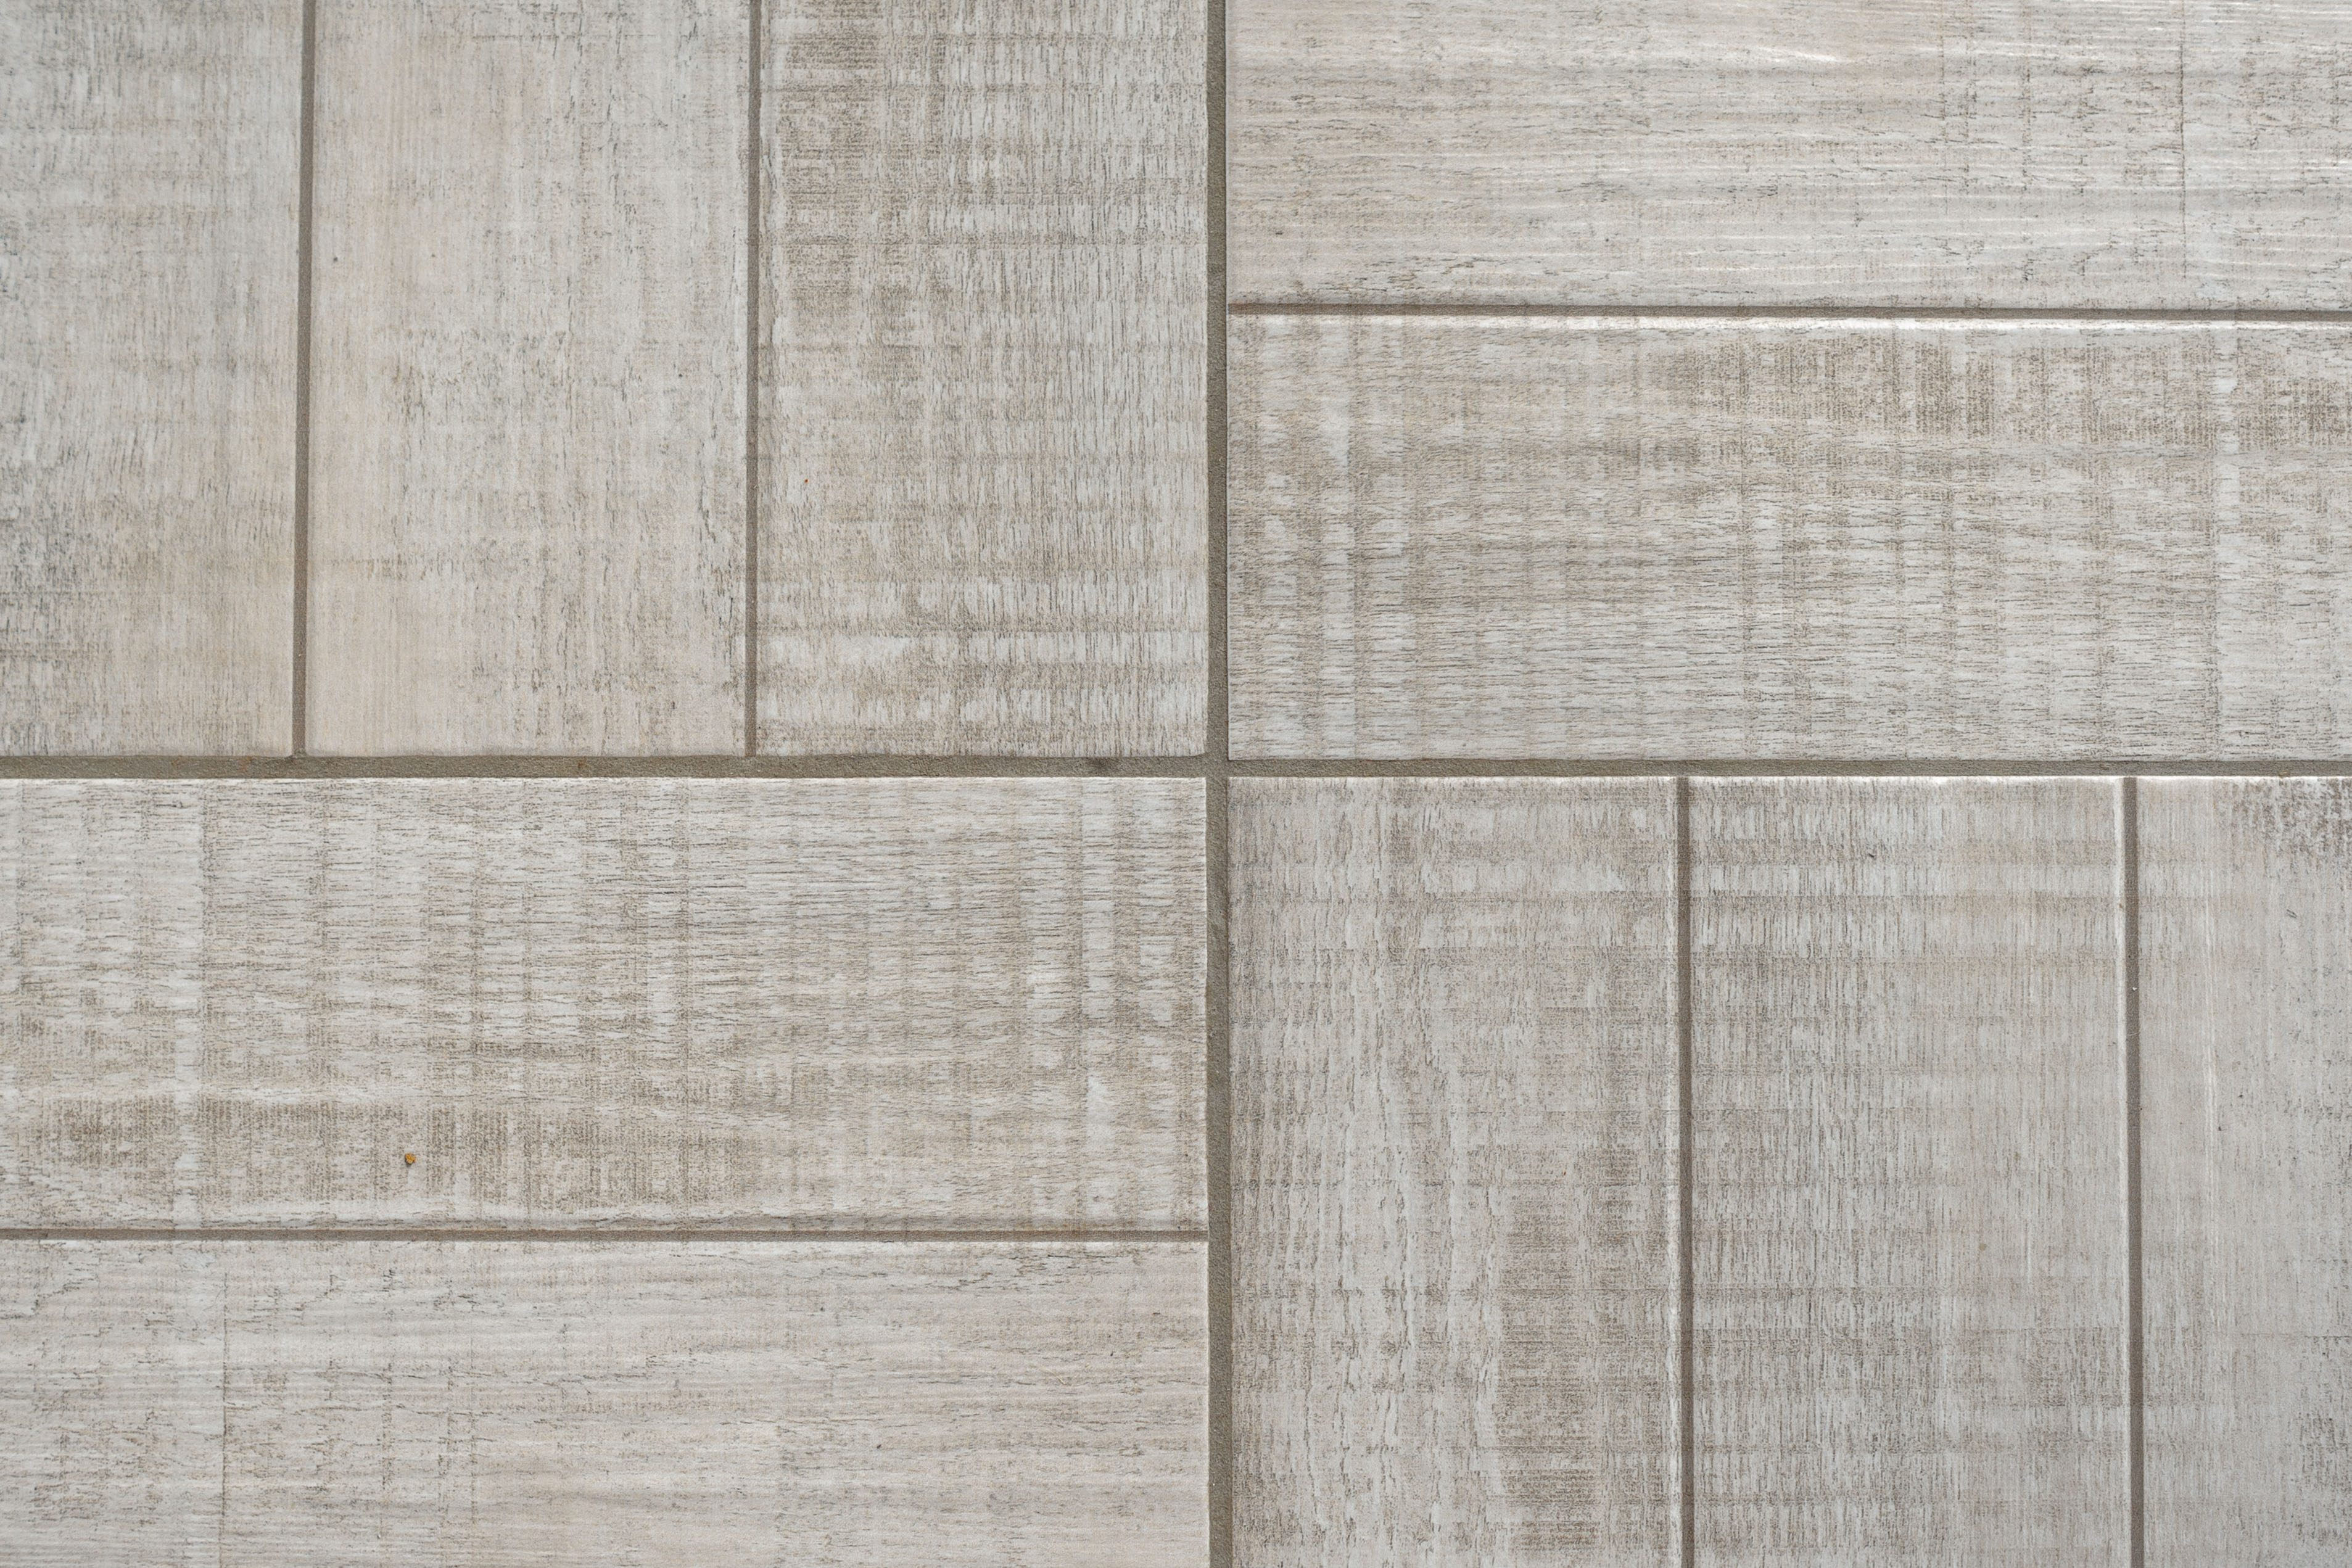 Concrete Flooring That Looks Like Wood, Faux Concrete Floor Tiles